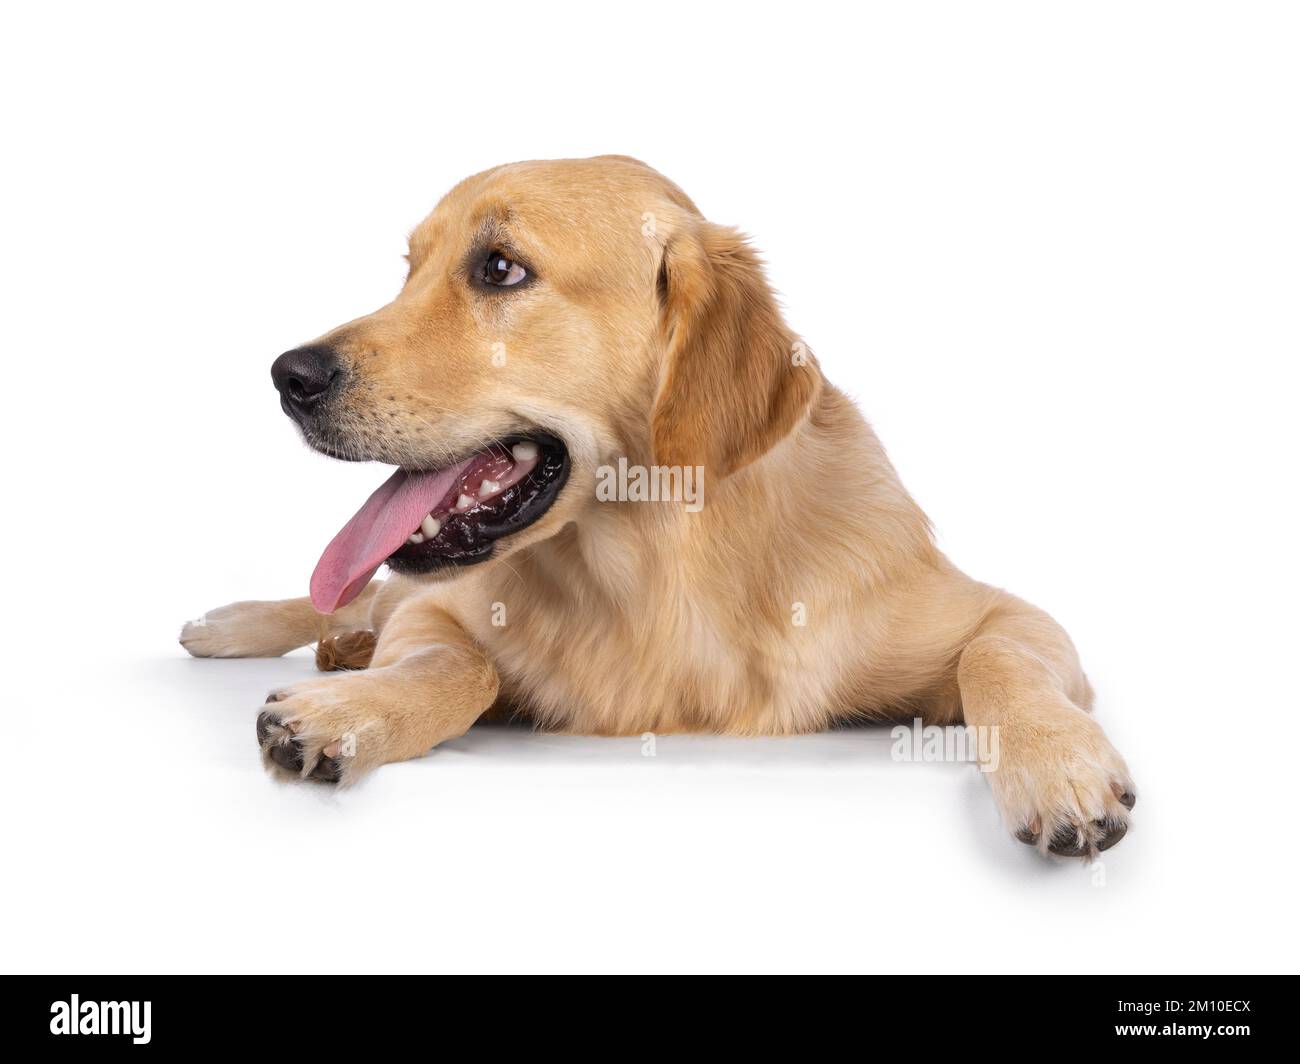 Jeune chien adulte Golden Retriever, allongé vers l'avant avec une longue langue vers l'extérieur. Regarder les côtés loin de l'appareil photo. Isolé sur un backgroun blanc Banque D'Images